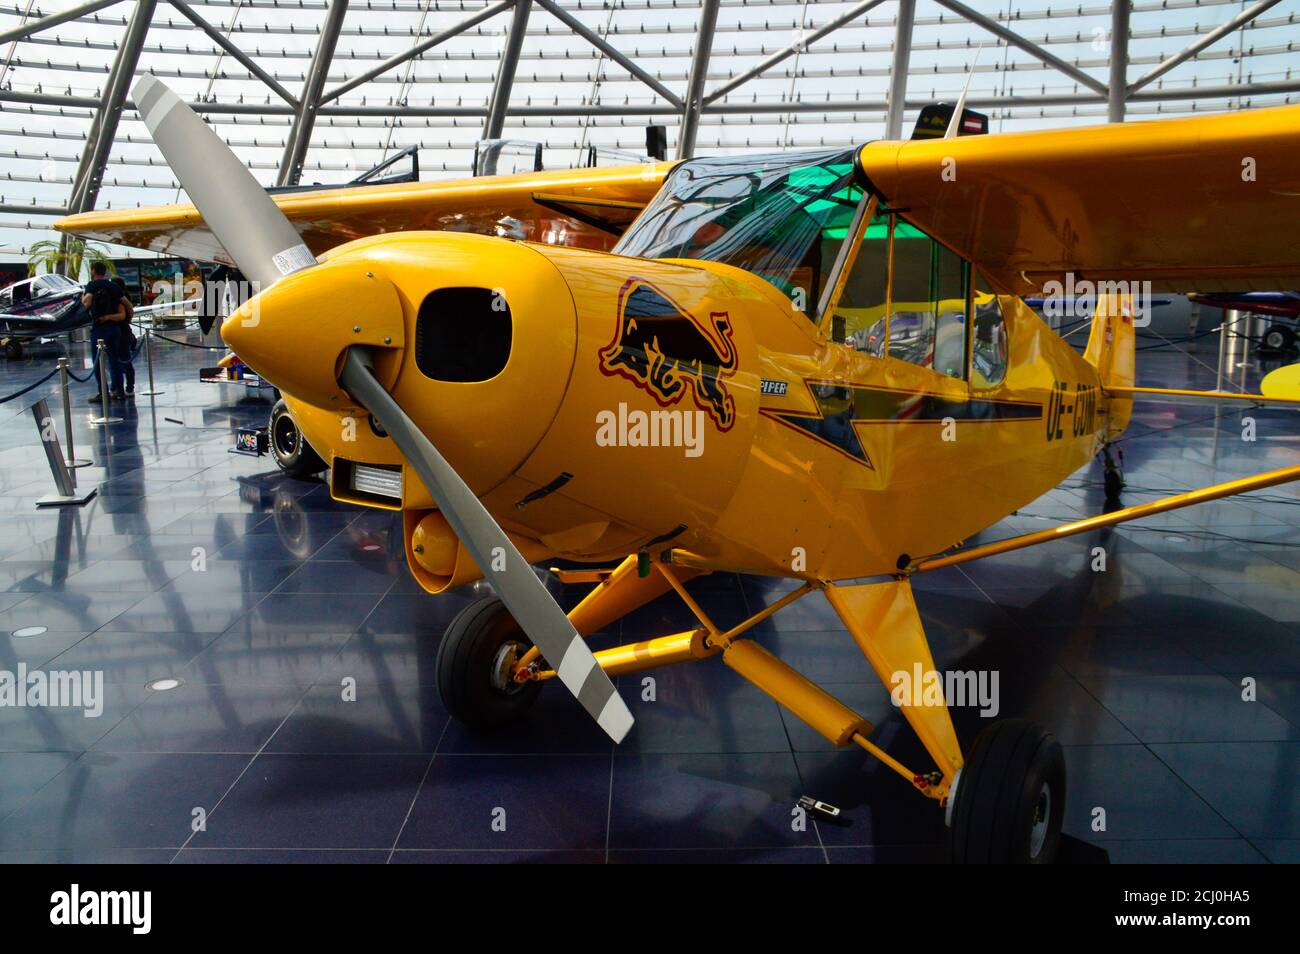 Hangar-7, Flughafen Salzburg, Sammlung historischer Flugzeuge, Helikopter und Formel-1-Rennwagen von Dietrich Mateschitz am 13.9.2020 Stock Photo